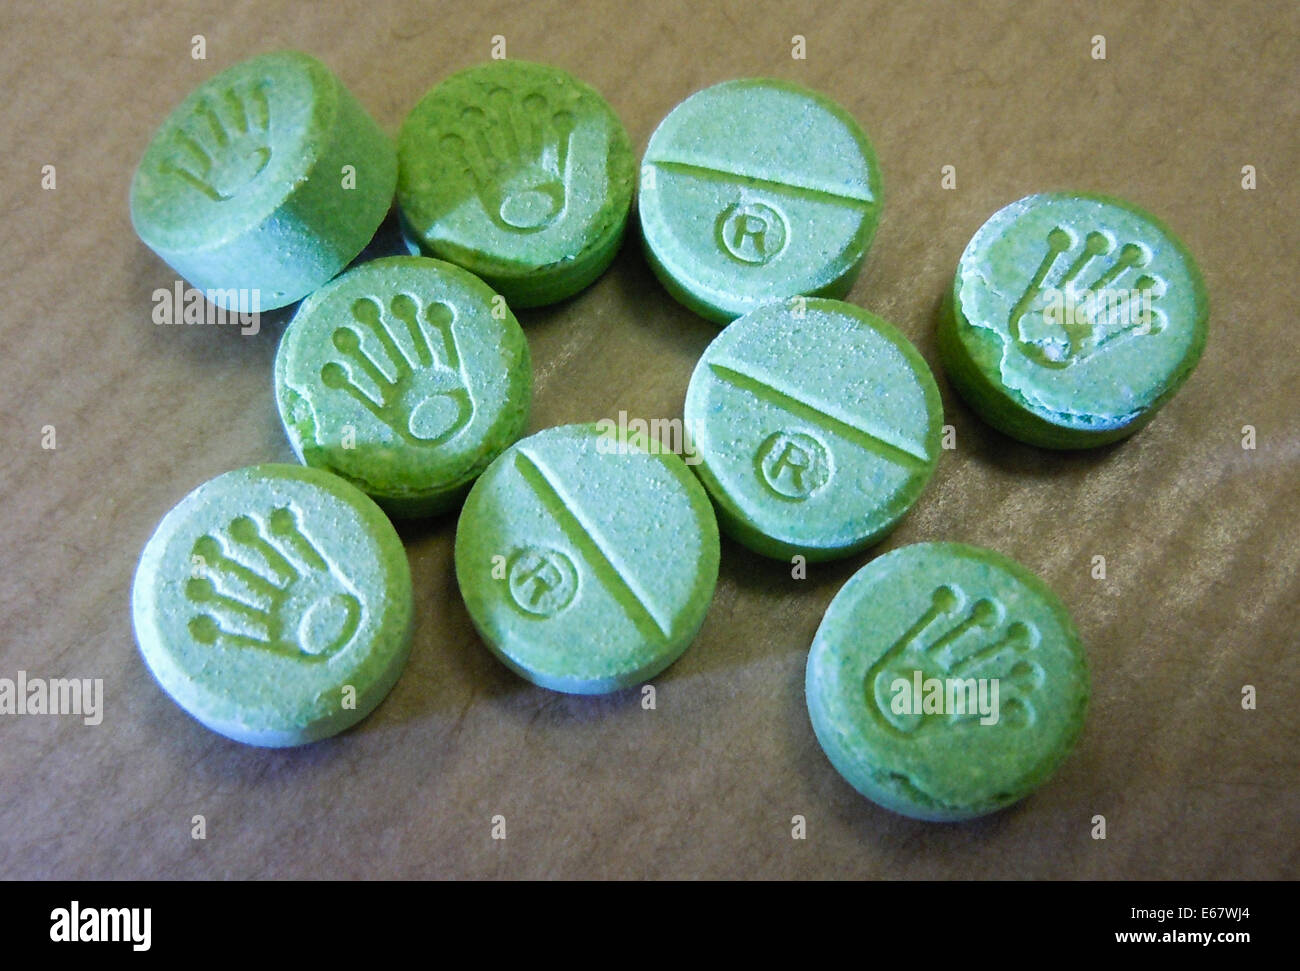 Gefälschte Ecstasy-Pillen bekannt als "Green Rolex" mit PMA für zahlreiche Todesfälle verantwortlich. Siehe Beschreibung für mehr Informationen. Stockfoto